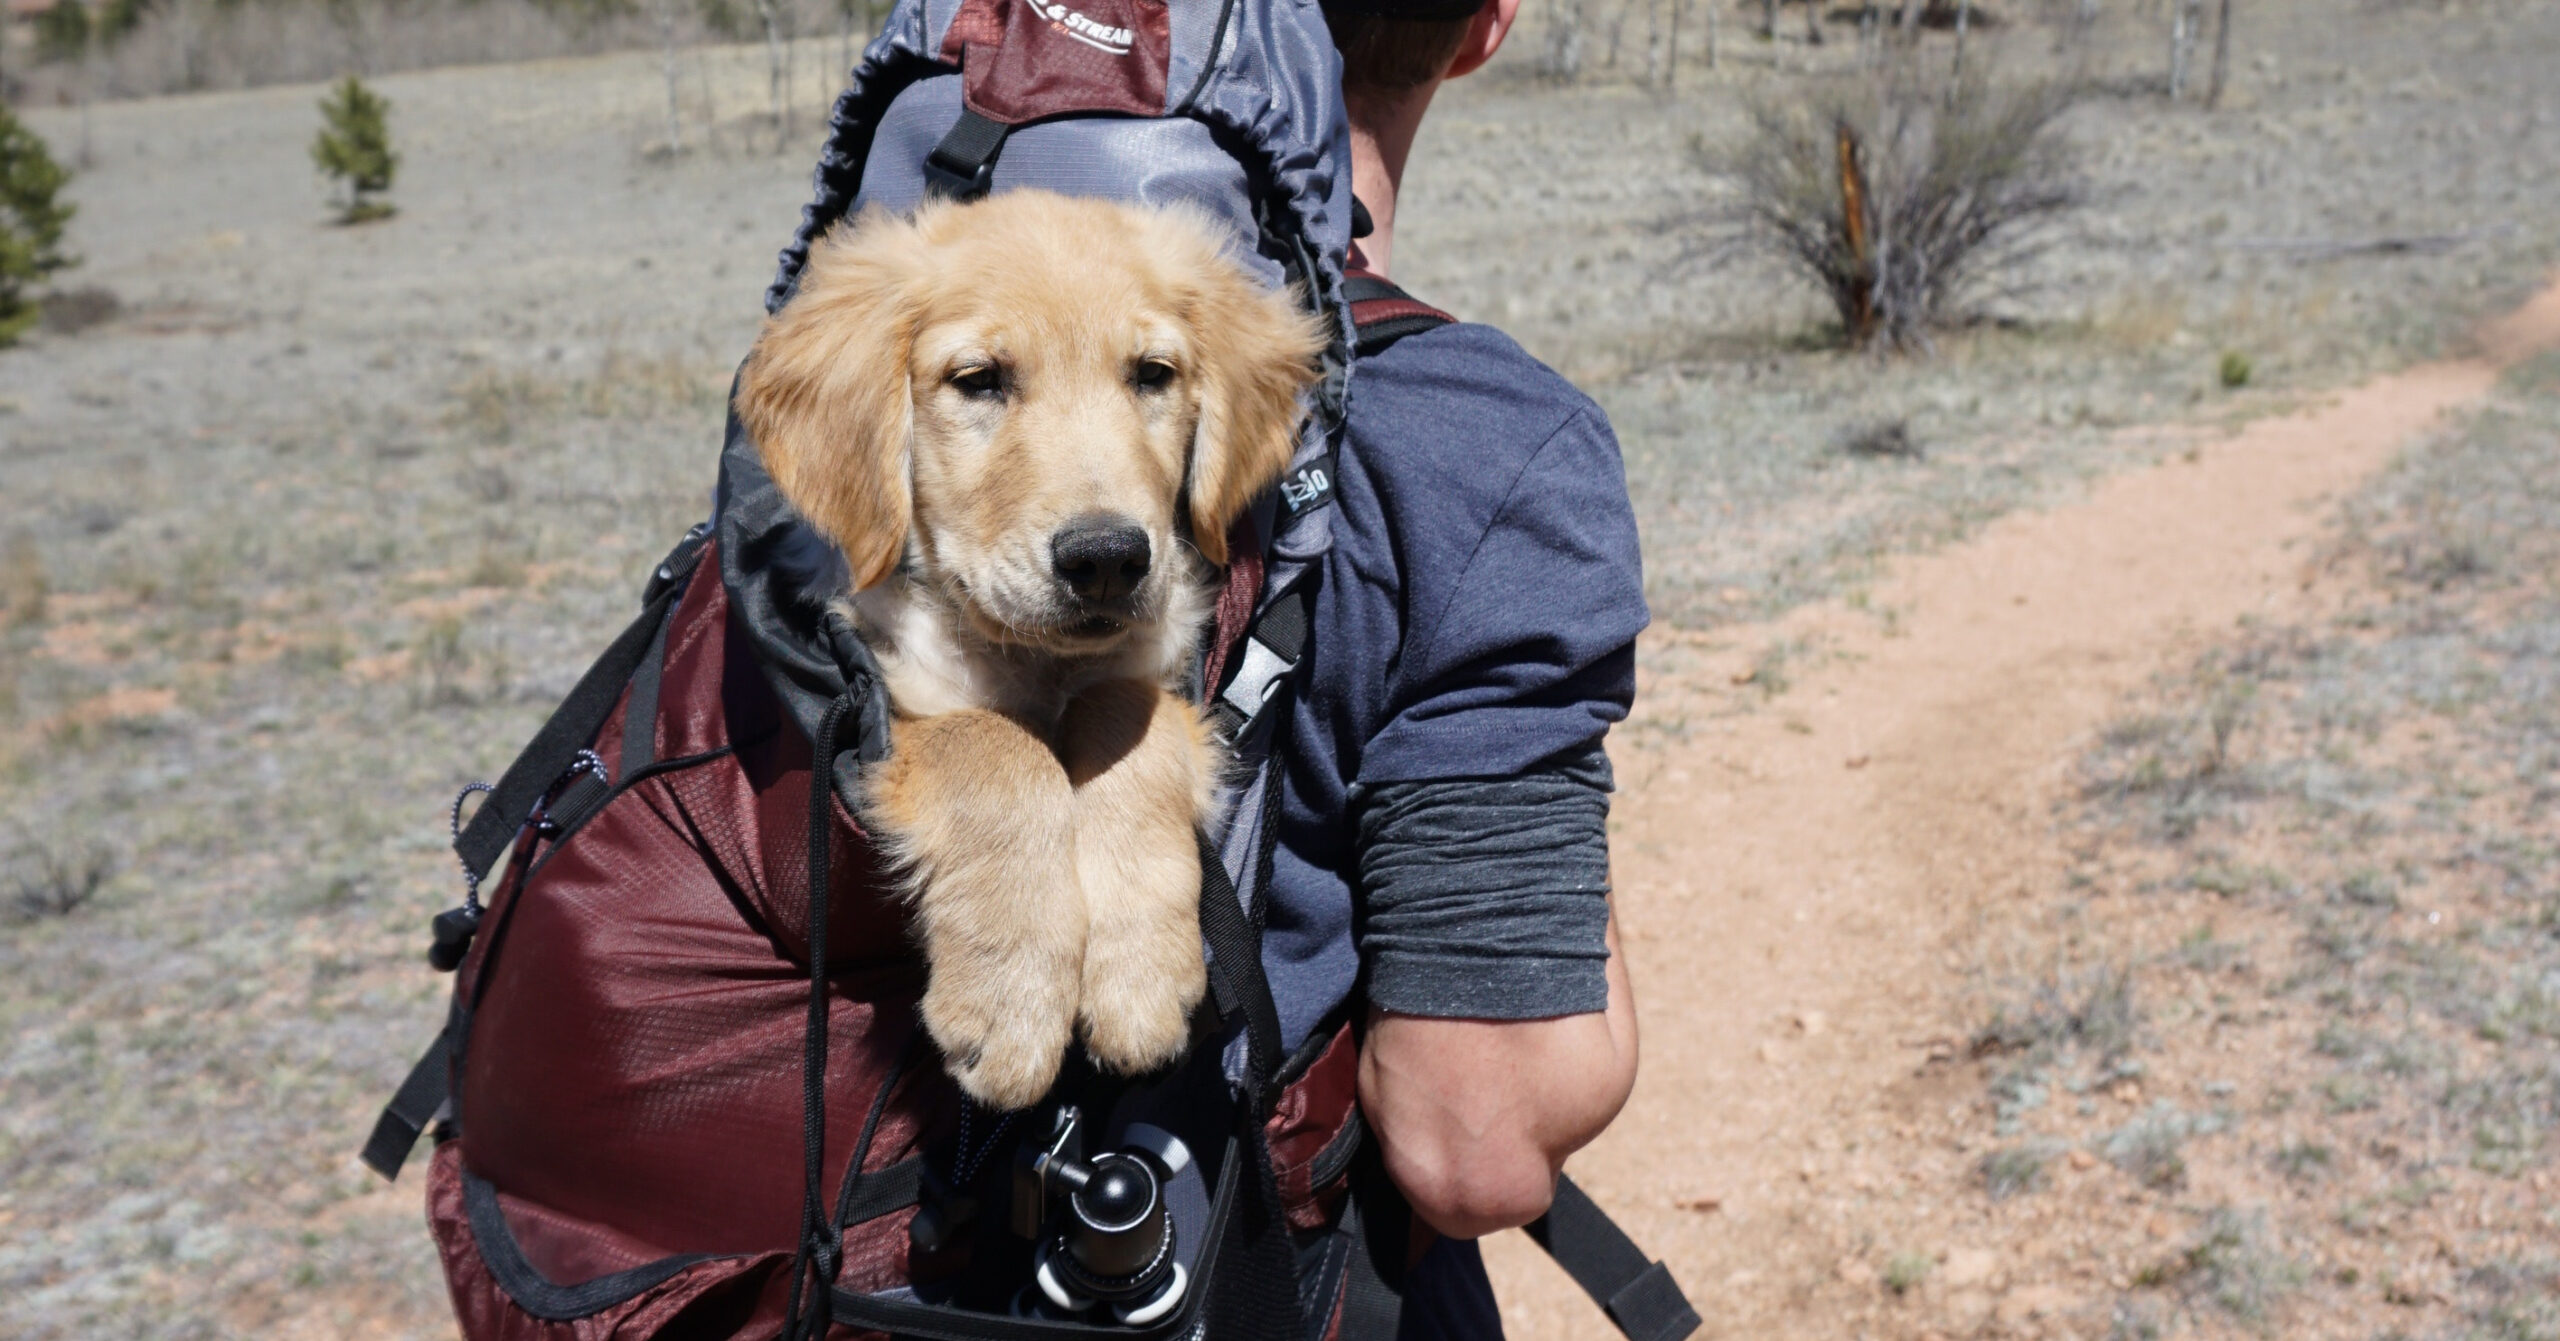 De beste manieren om huisdieren te trainen voor reizen en uitstapjes